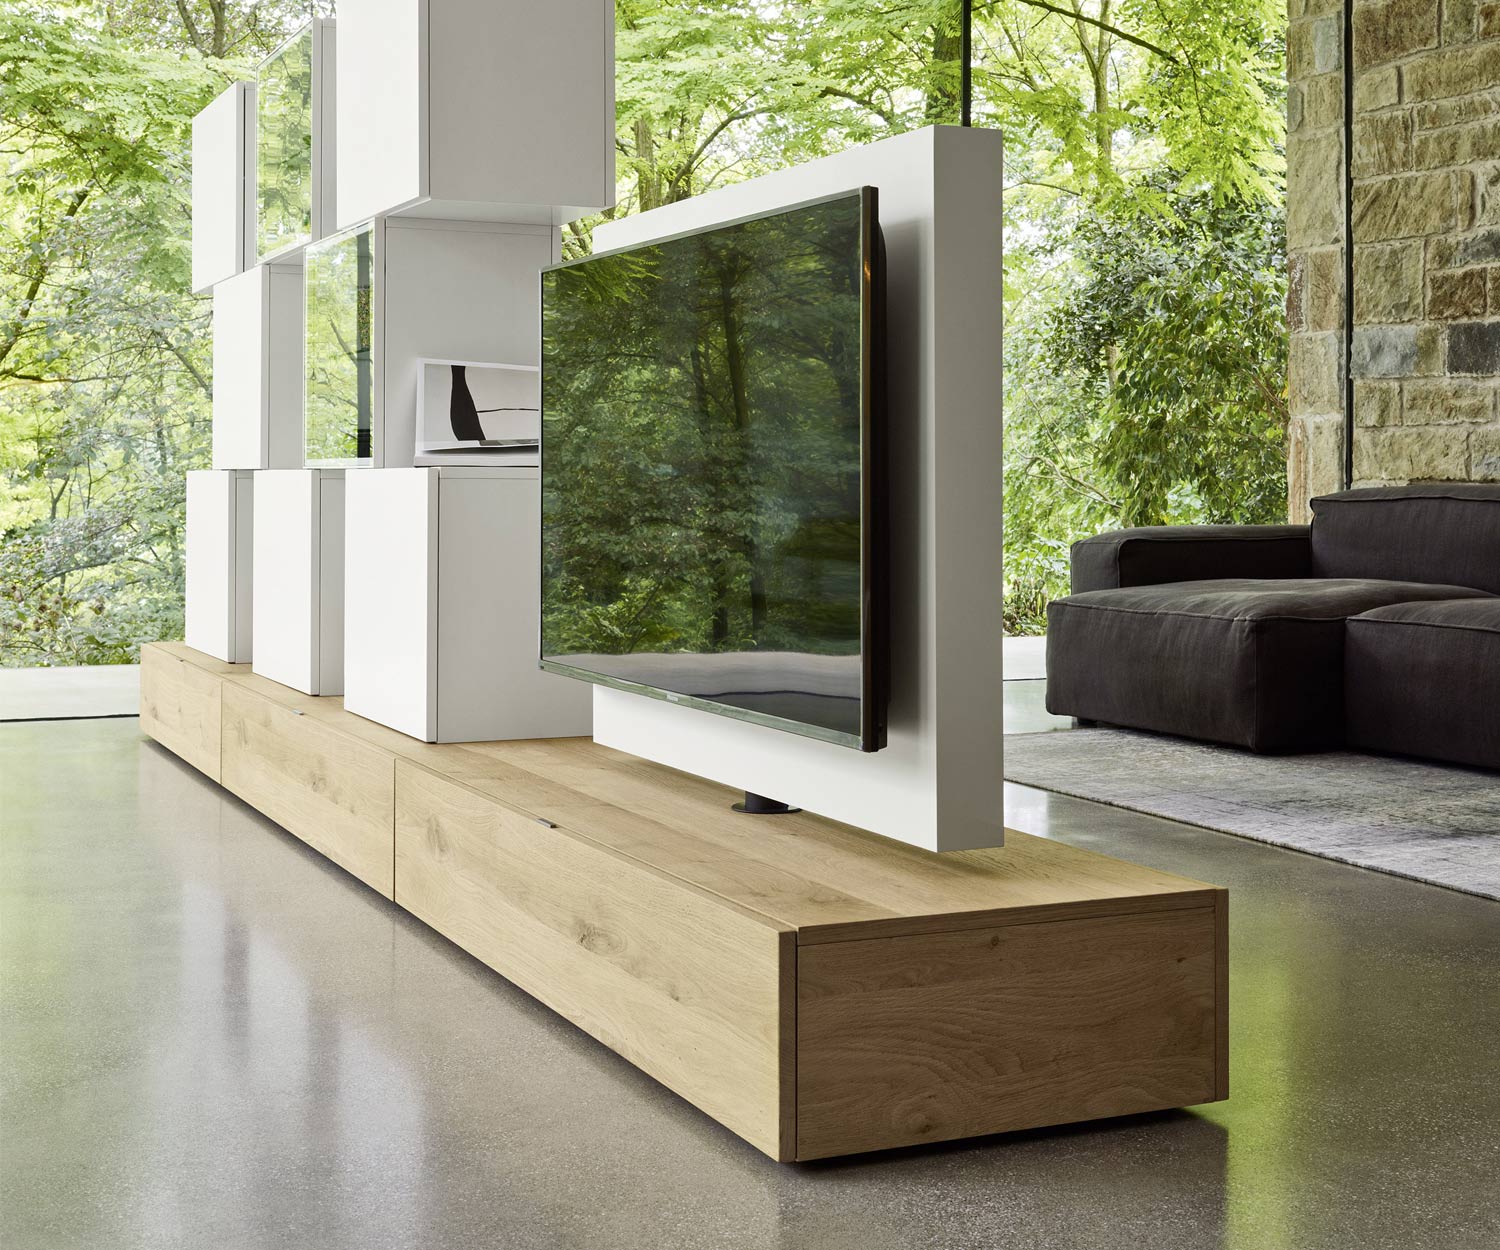 Exclusif Livitalia Roto Design Lowboard Séparation de pièce design avec panneau TV pivotant